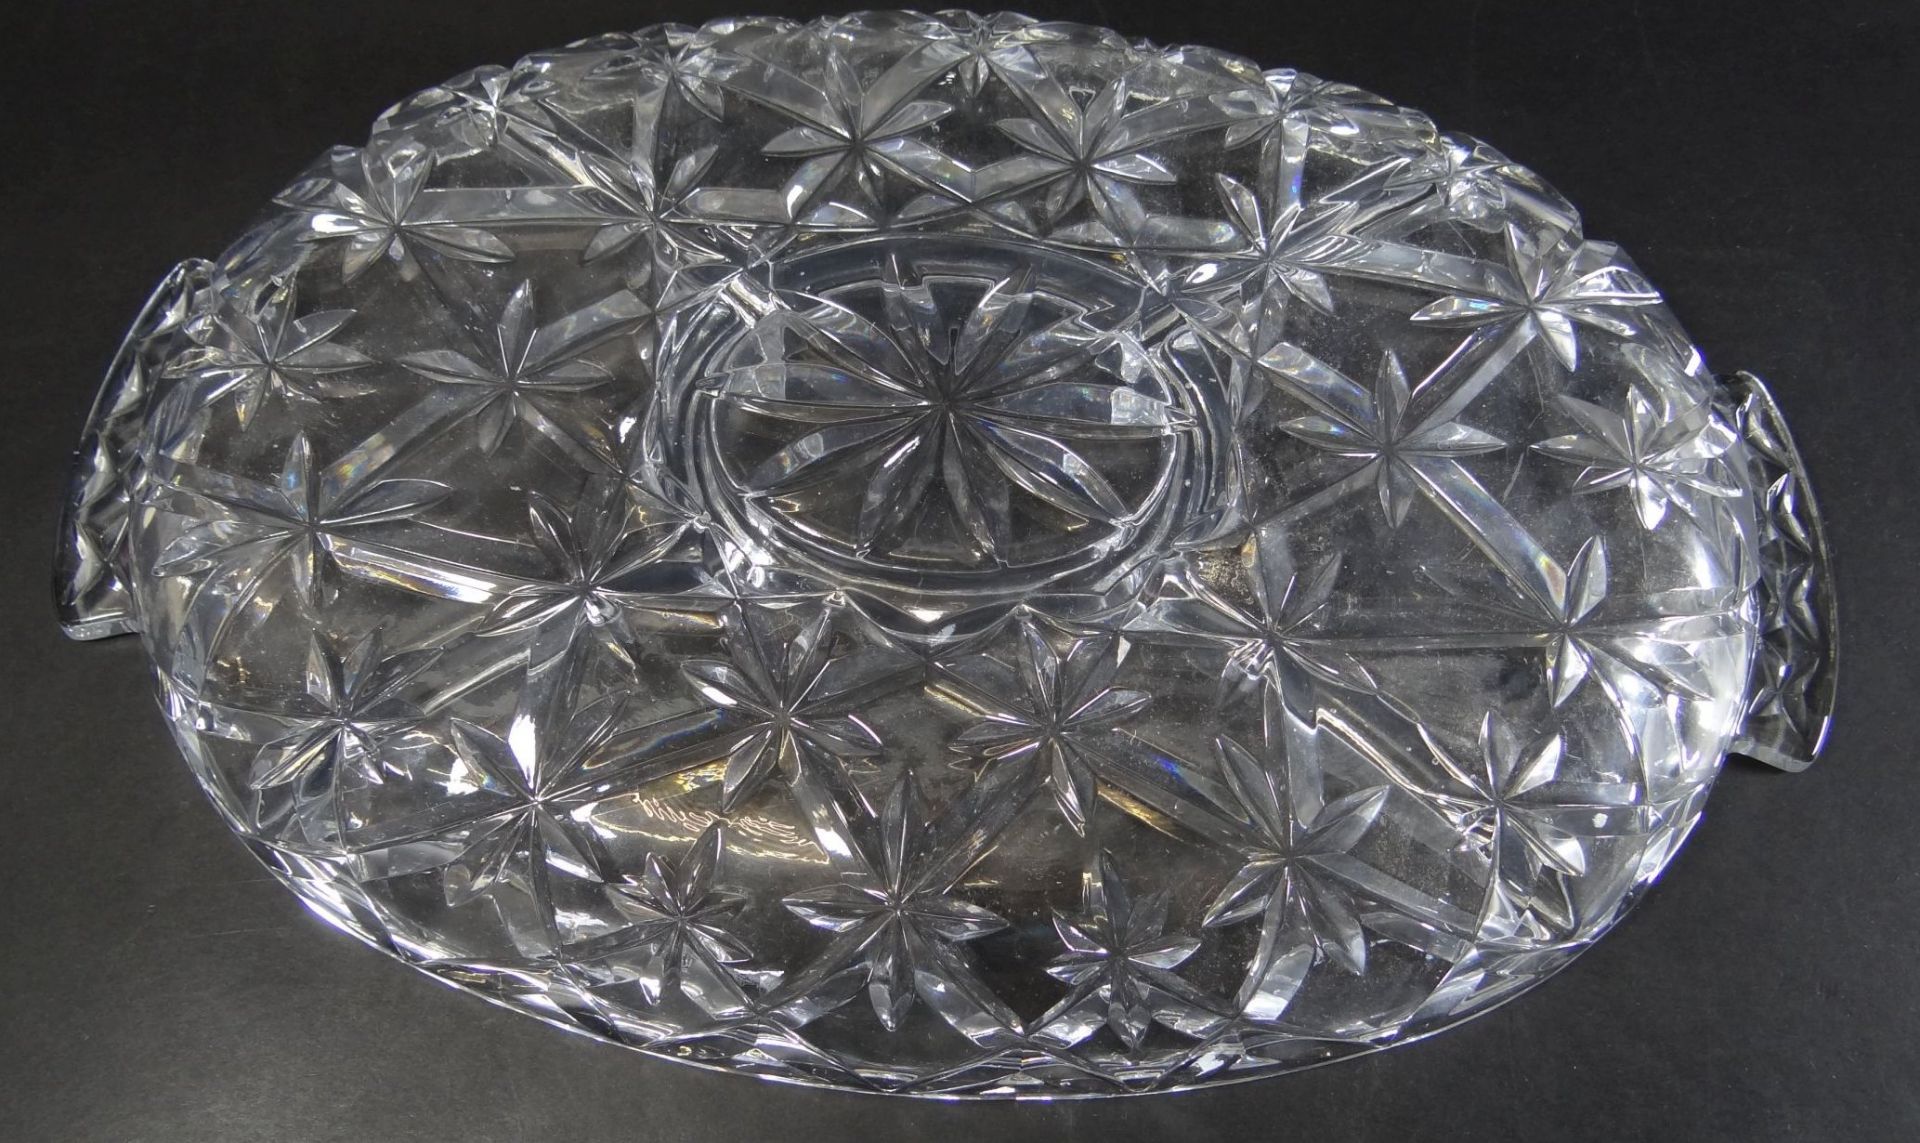 grosses, schweres ovales Kristall-Kabarette, mittig mit Deckel, 35x23 cm - Bild 4 aus 4